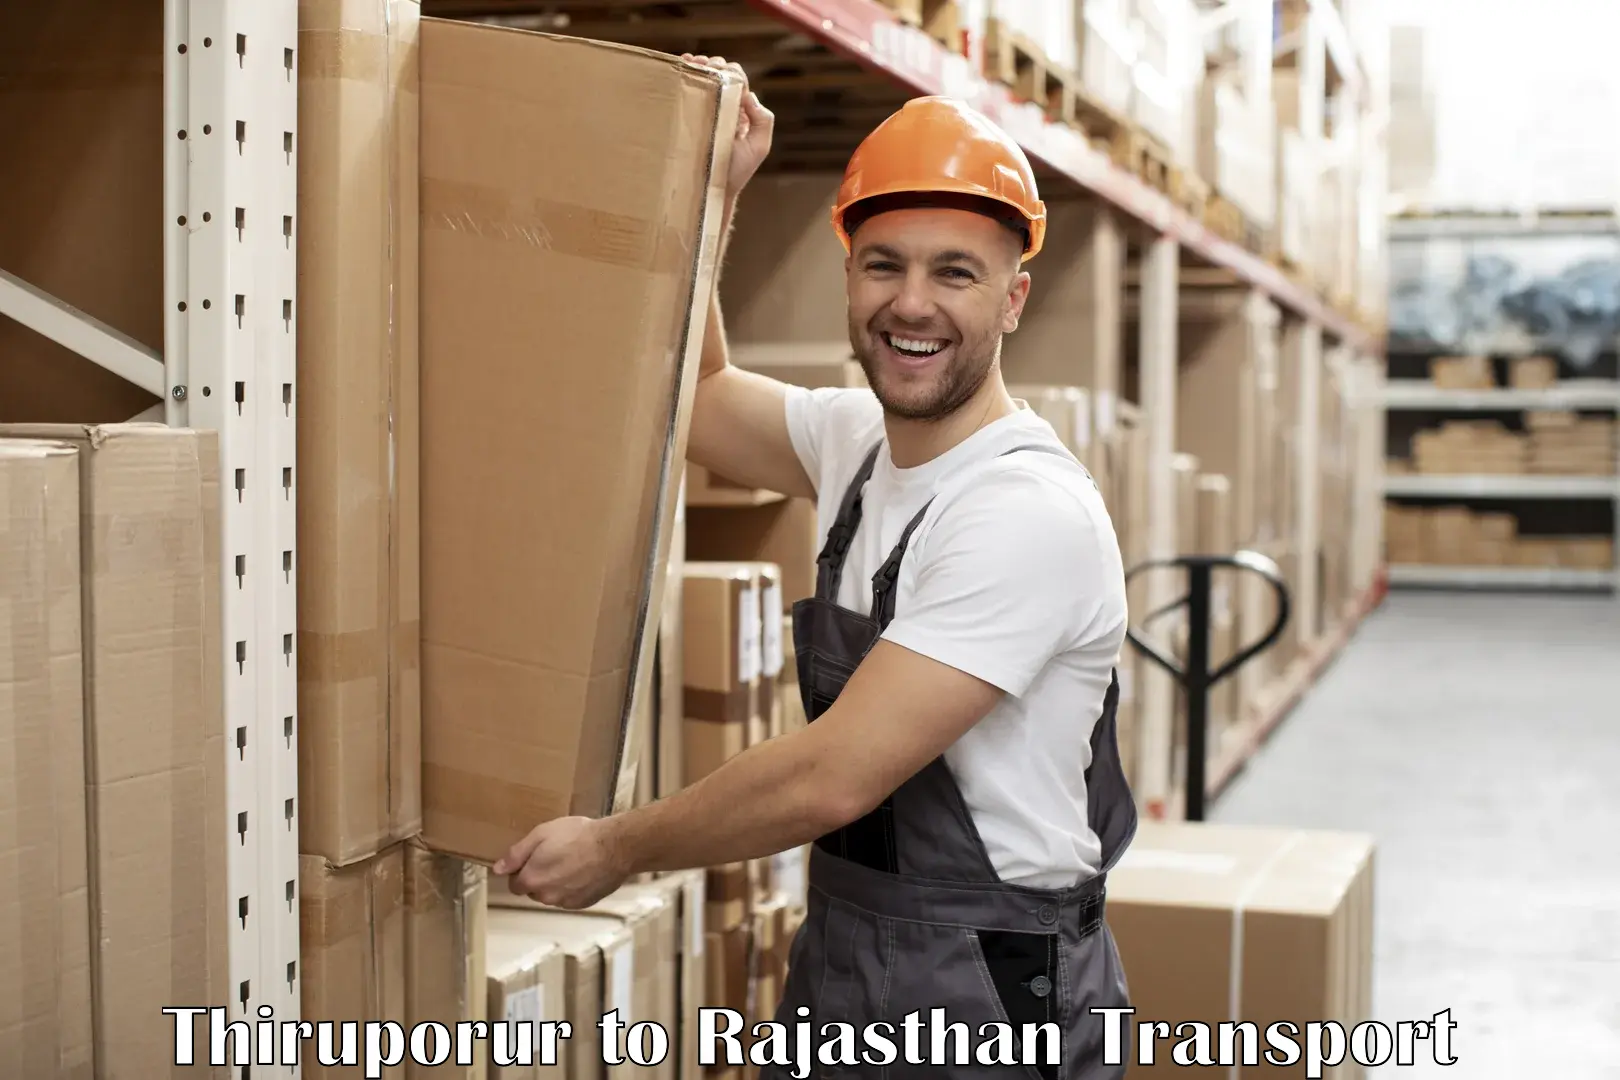 Online transport Thiruporur to Rajasthan